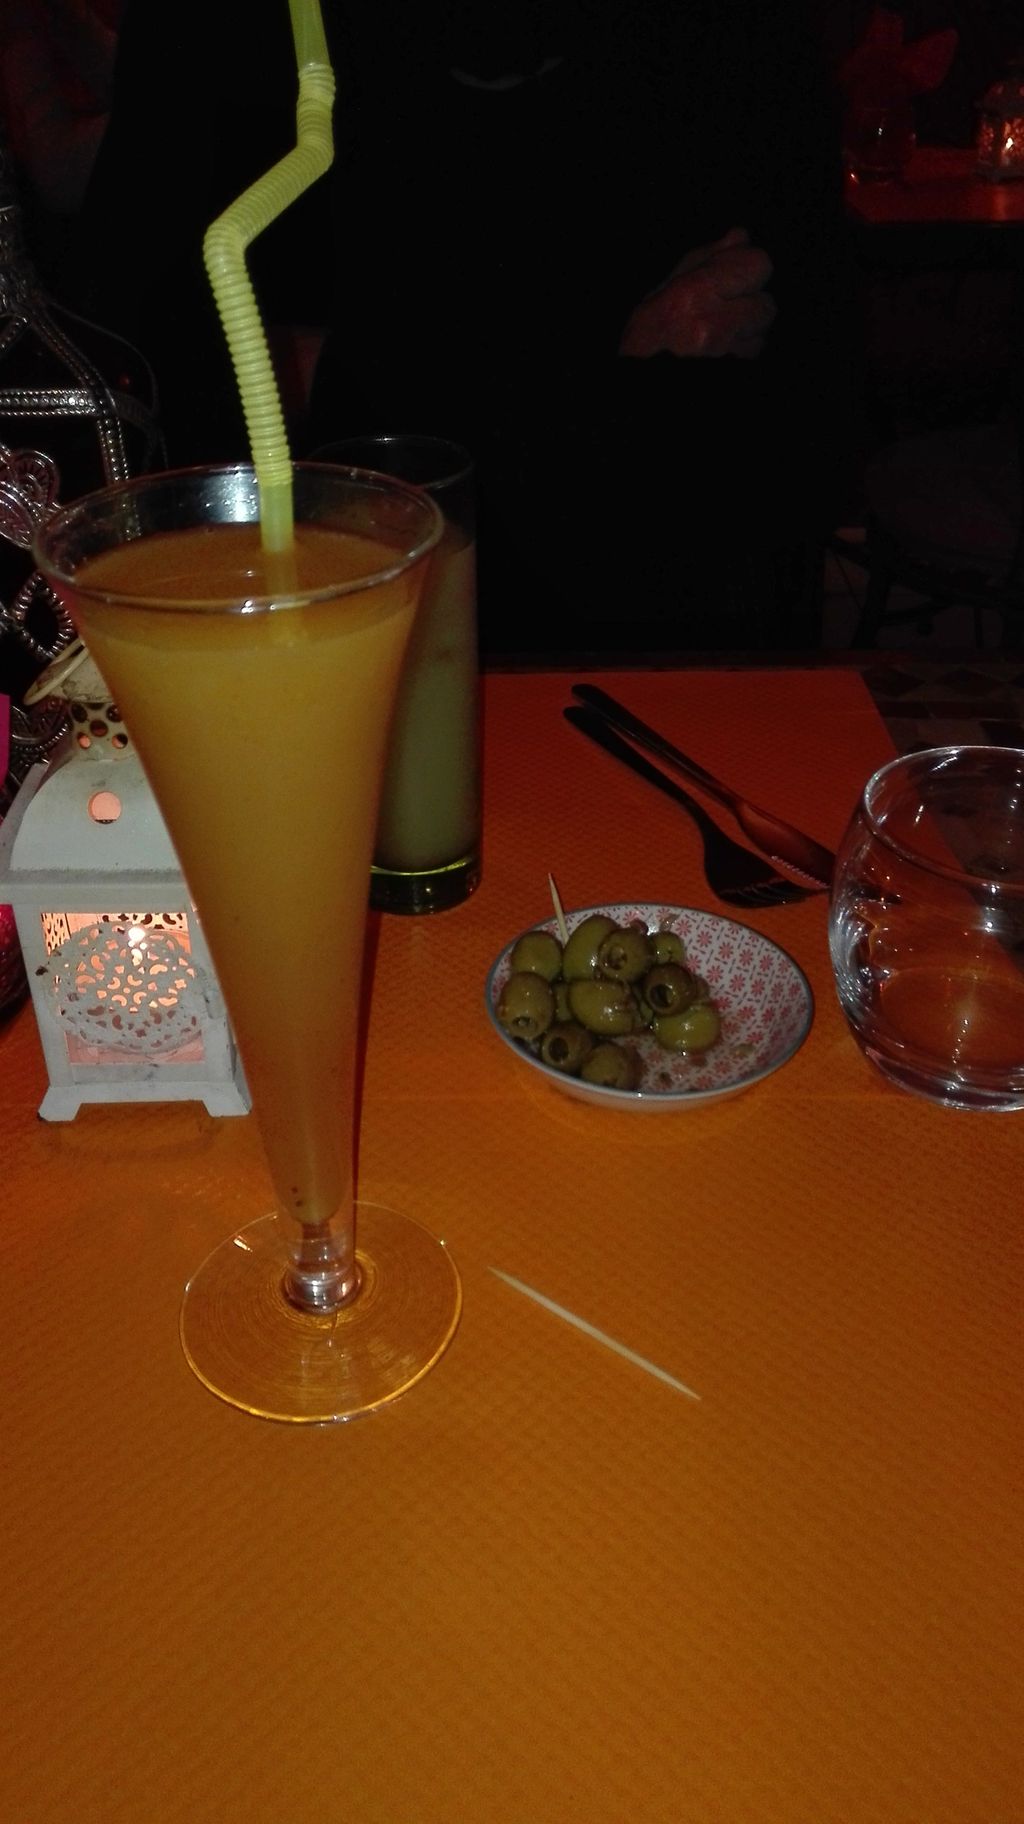 La Belle Saison Toulouse - Drink Juice Non-alcoholic beverage Cocktail garnish Food